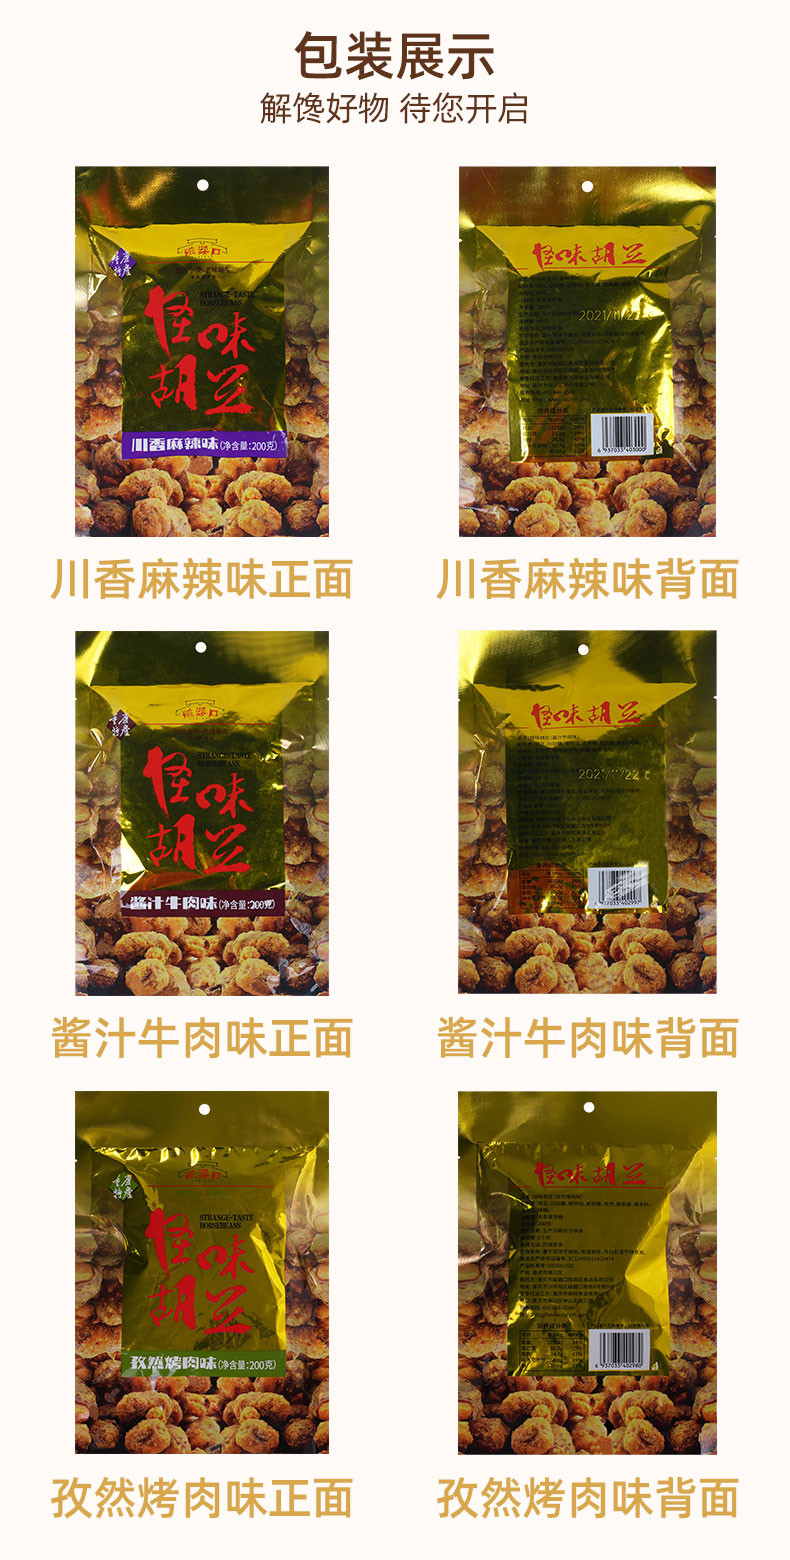 大牛哥 【200g*3袋】怪味胡豆重庆特产休闲零食小吃麻辣炒货小包装